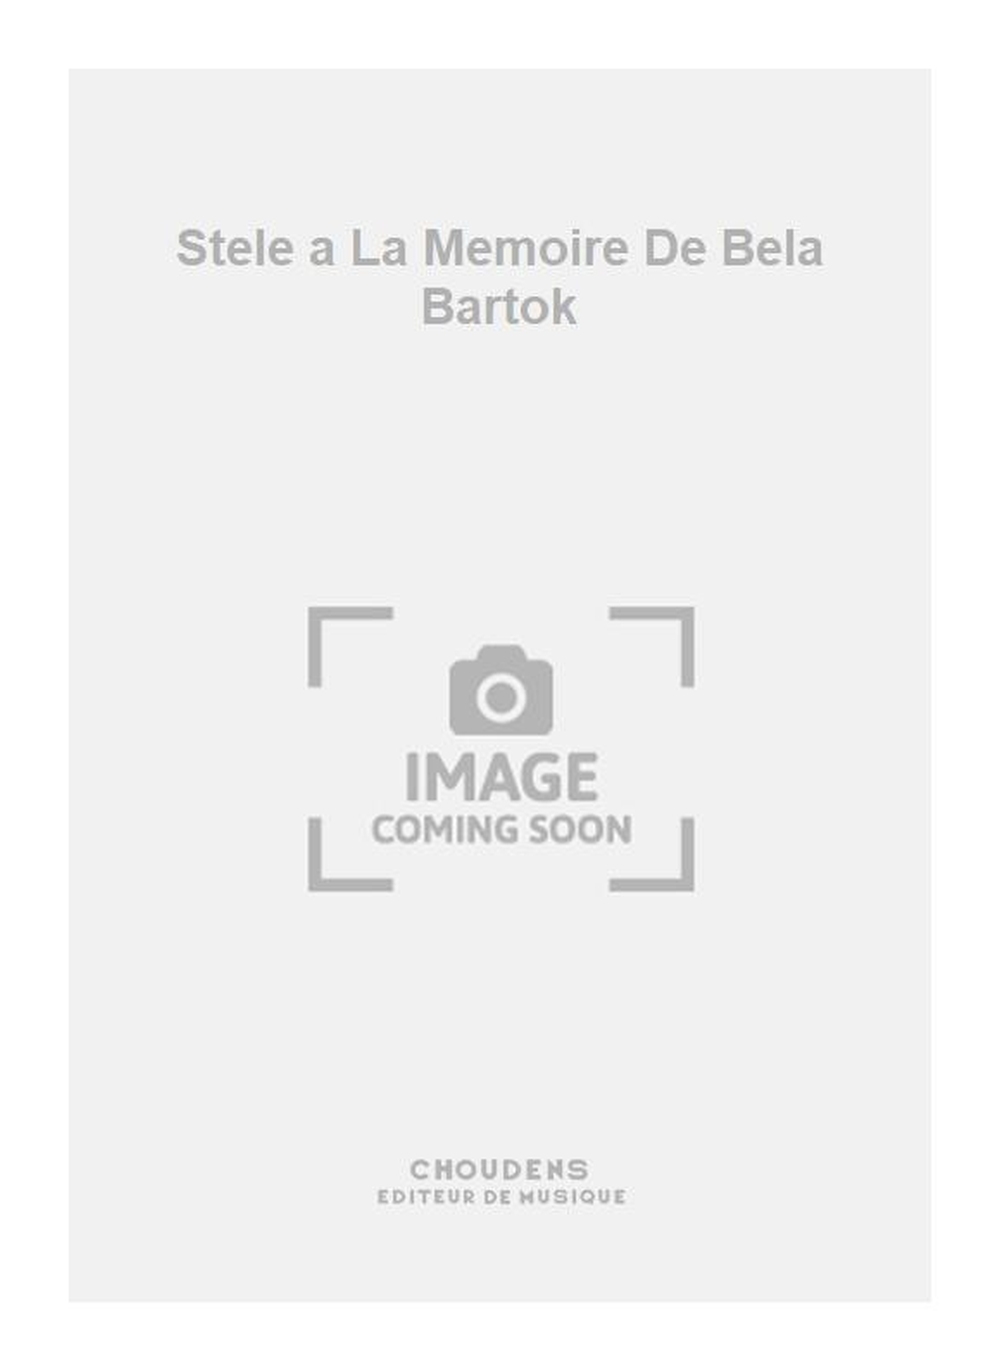 Ancelin: Stele a La Memoire De Bela Bartok